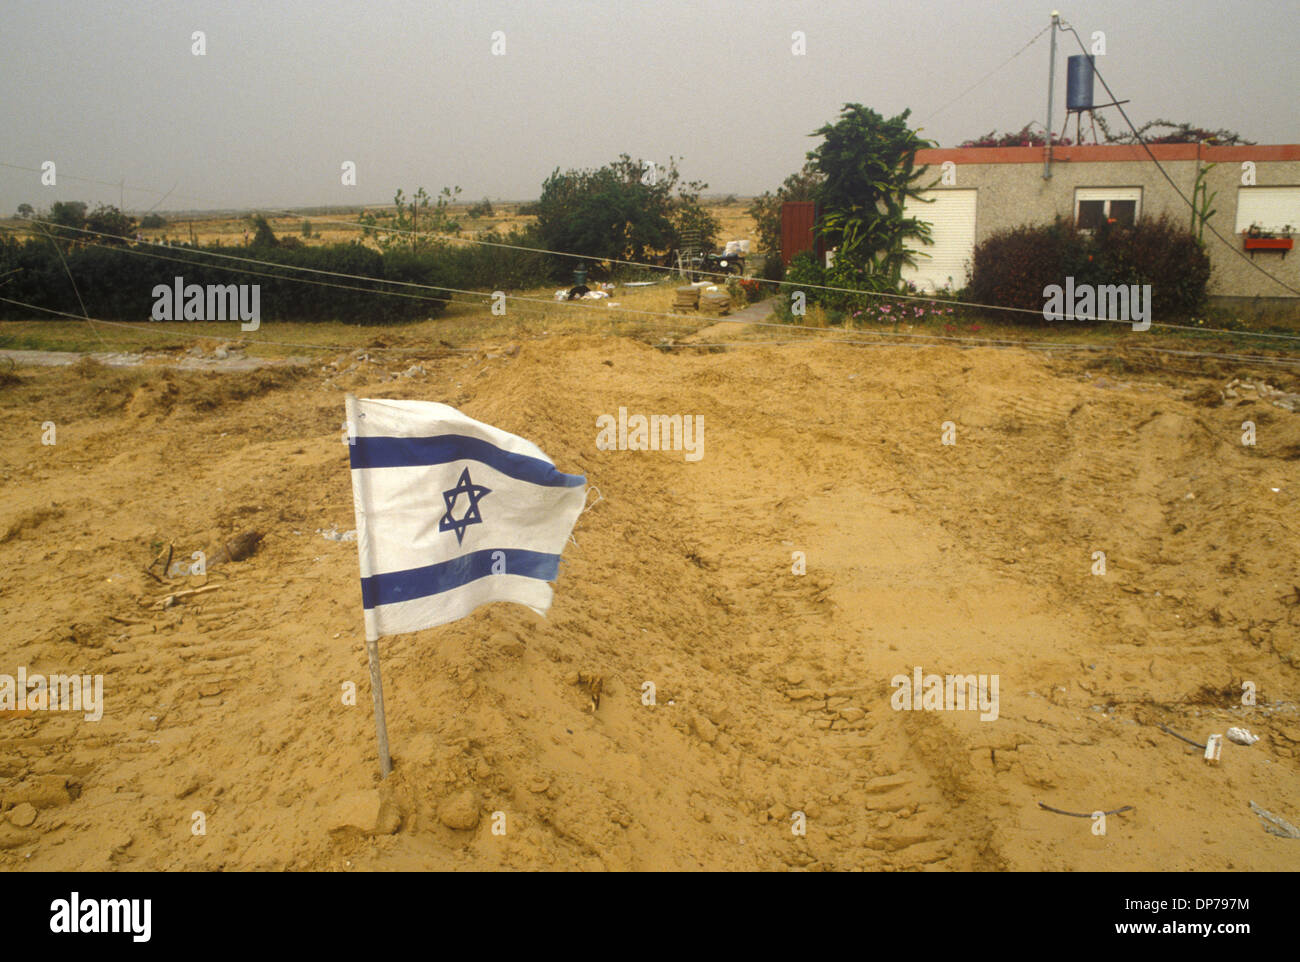 Yamit, Israele, aprile 1982. Yamit era un insediamento israeliano stabilito dalla fine della guerra dei sei giorni del 1967, nella parte settentrionale della penisola del Sinai a sud della Striscia di Gaza. L'accordo fu consegnato all'Egitto nel 1982 come parte dei termini del trattato di pace Egitto-Israele del 1979. 1980 HOMER SYKES Foto Stock